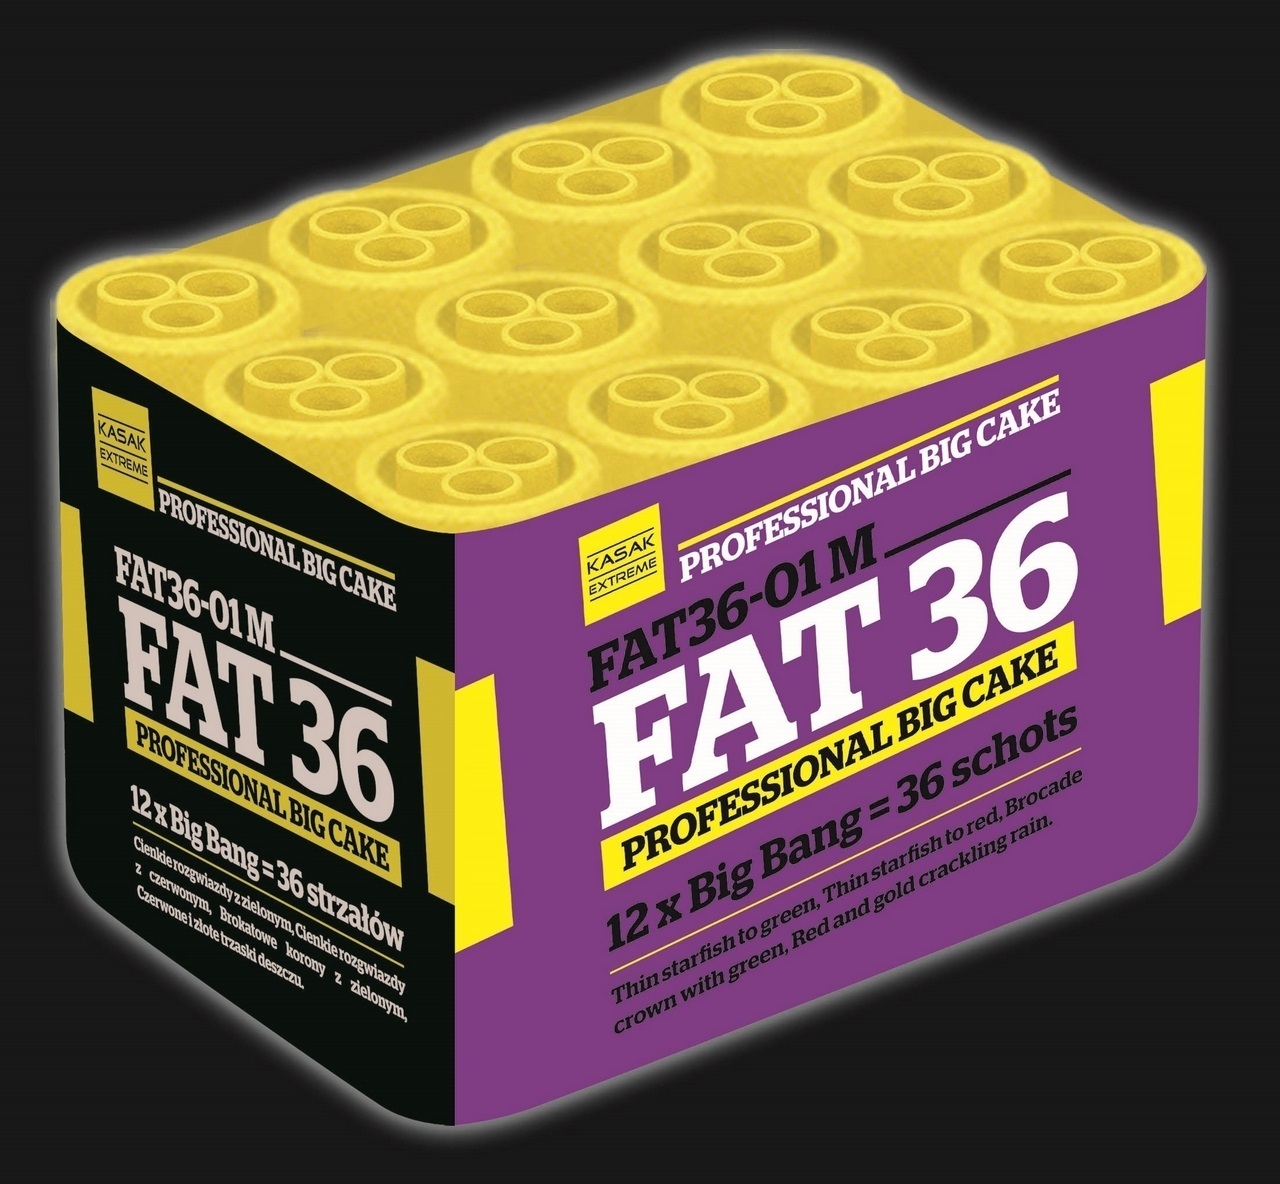 FAT36-01M